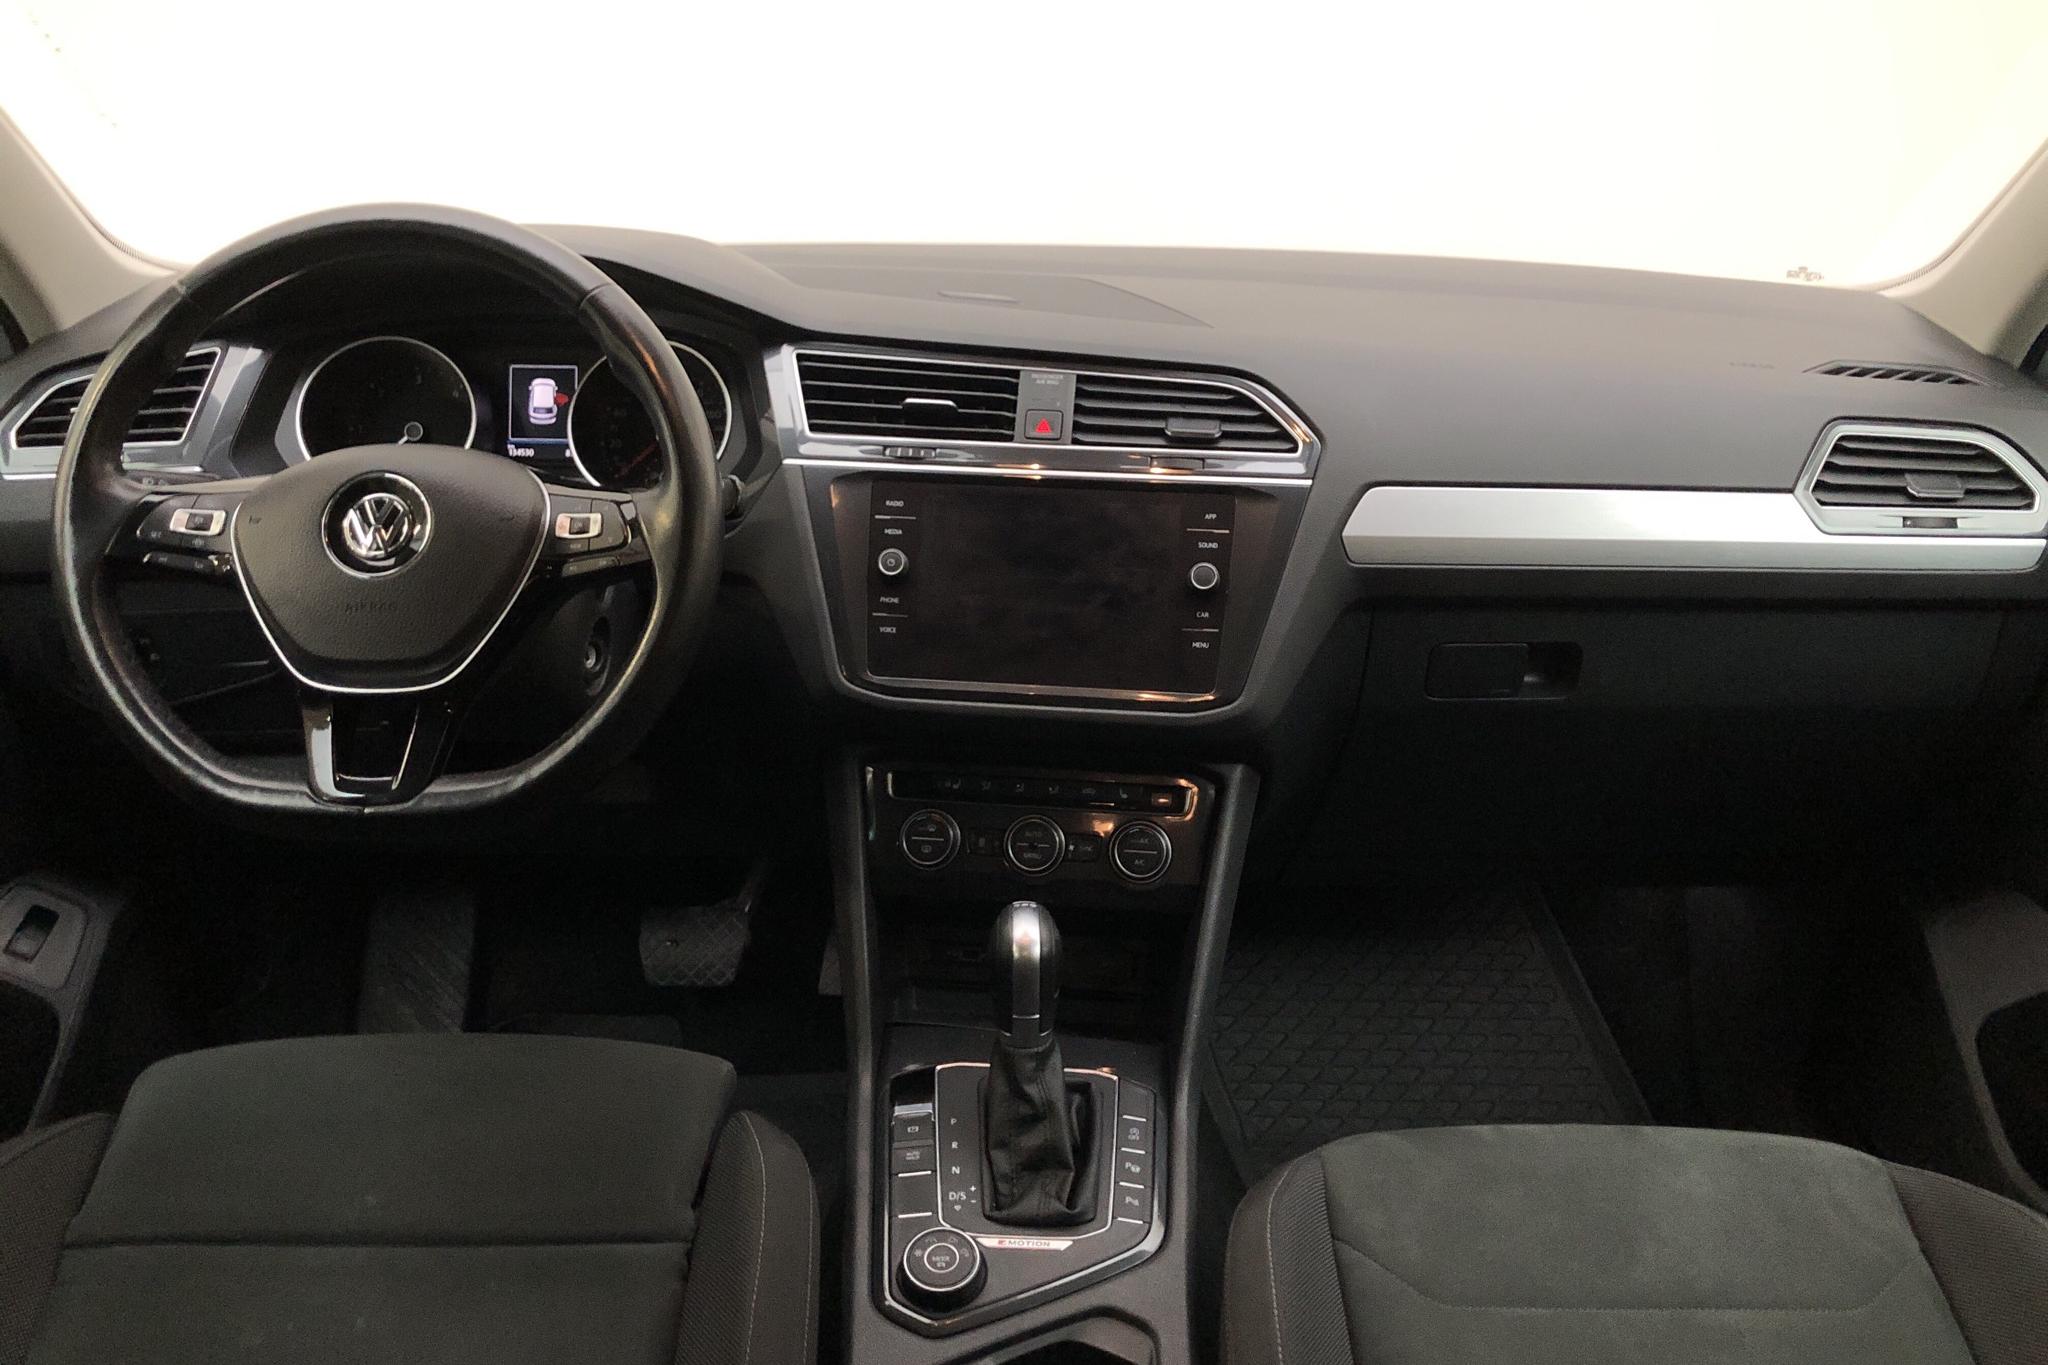 VW Tiguan 2.0 TDI 4MOTION (150hk) - 134 530 km - Automatic - white - 2019